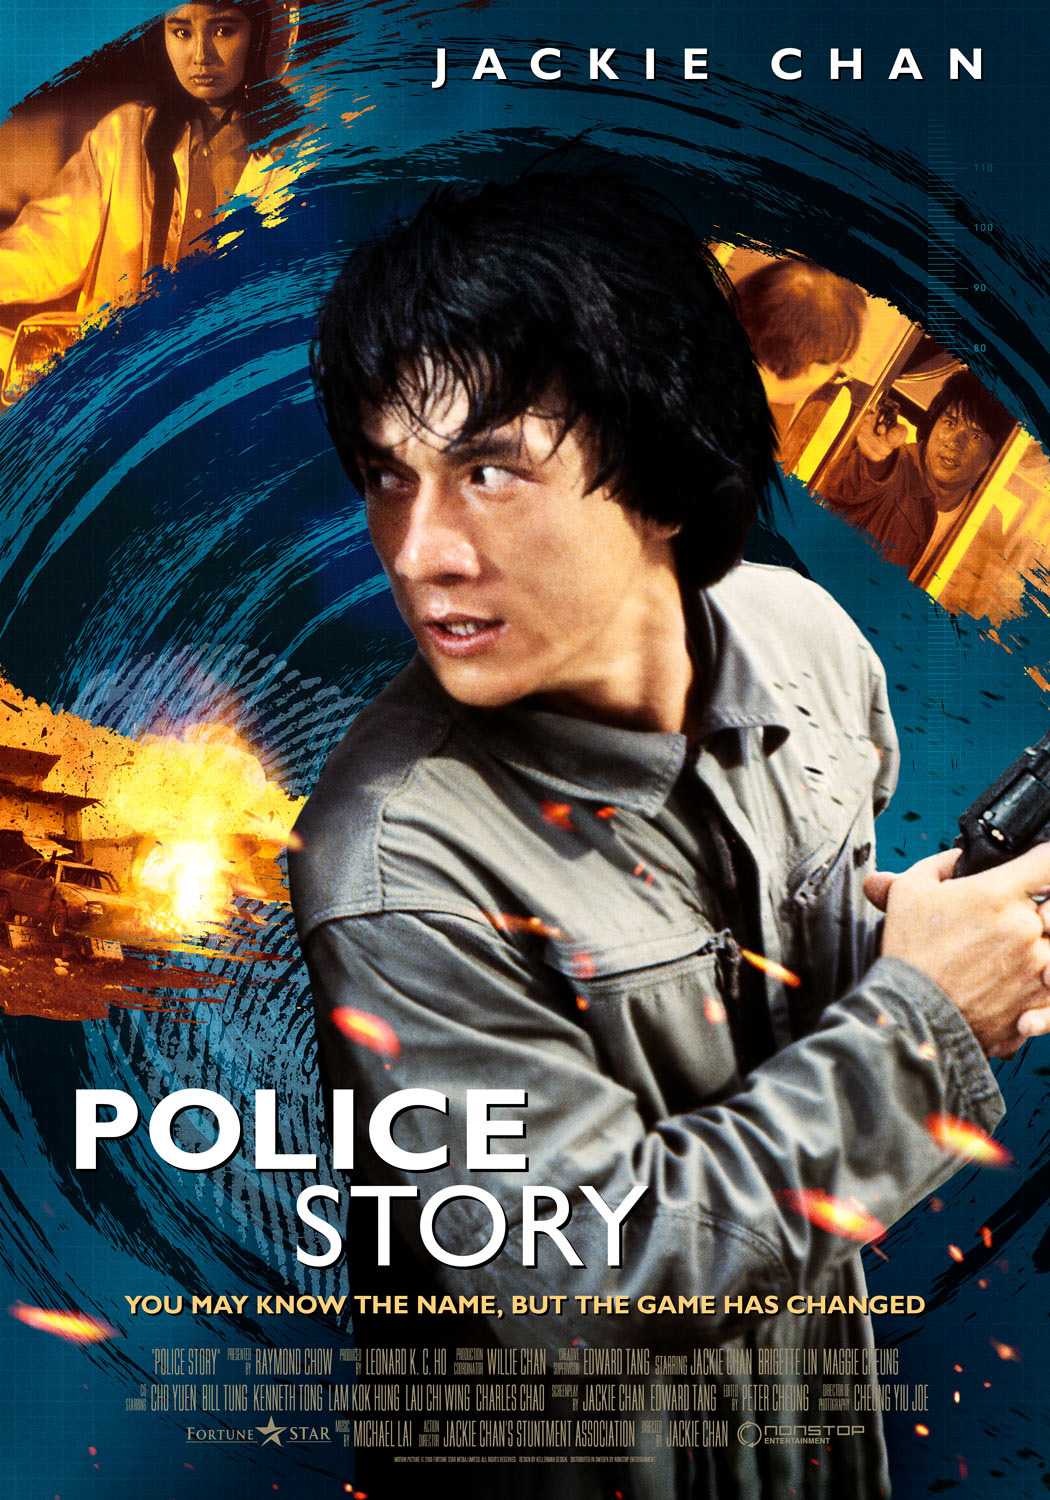 Stiahni si Filmy CZ/SK dabing Police Story (1985)(CZ) = CSFD 81%